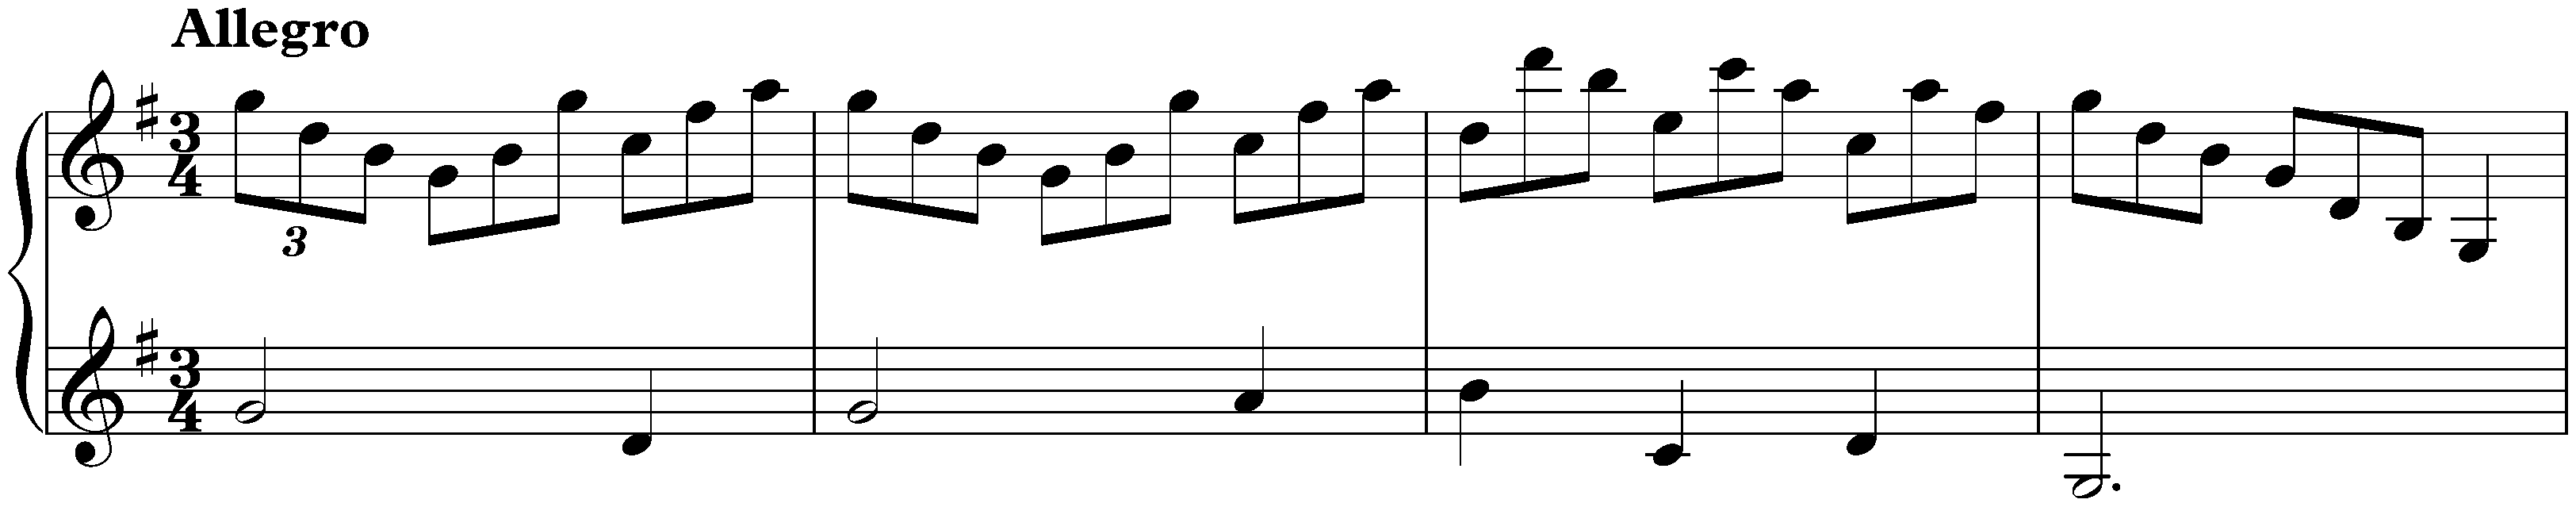 Sonata in G major, K. 431